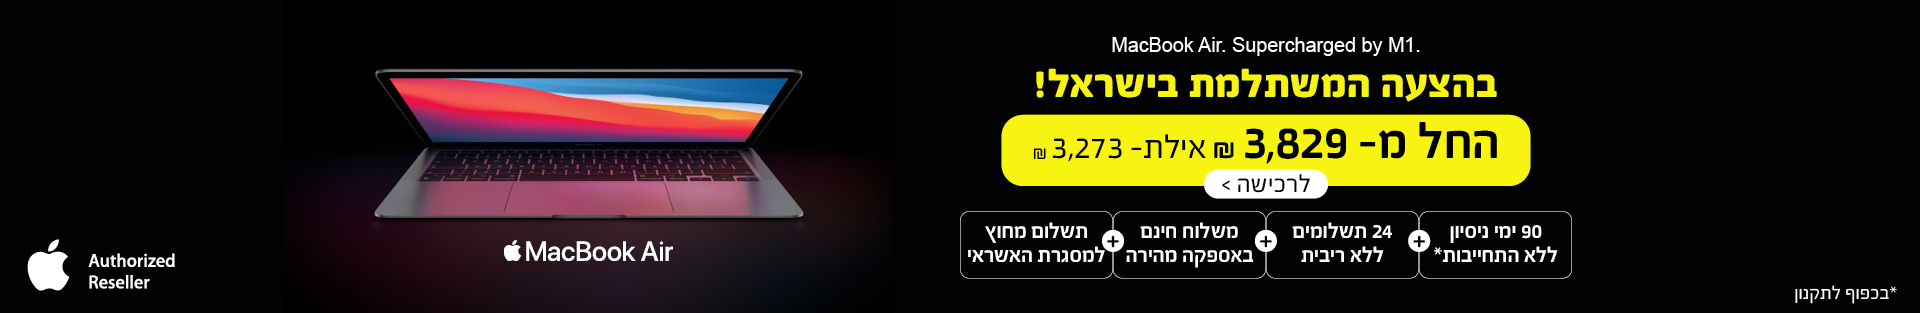 MacBook Air. Supercharged by M1. בהצעה המשתלמת בישראל! החל מ- 3,829 ש